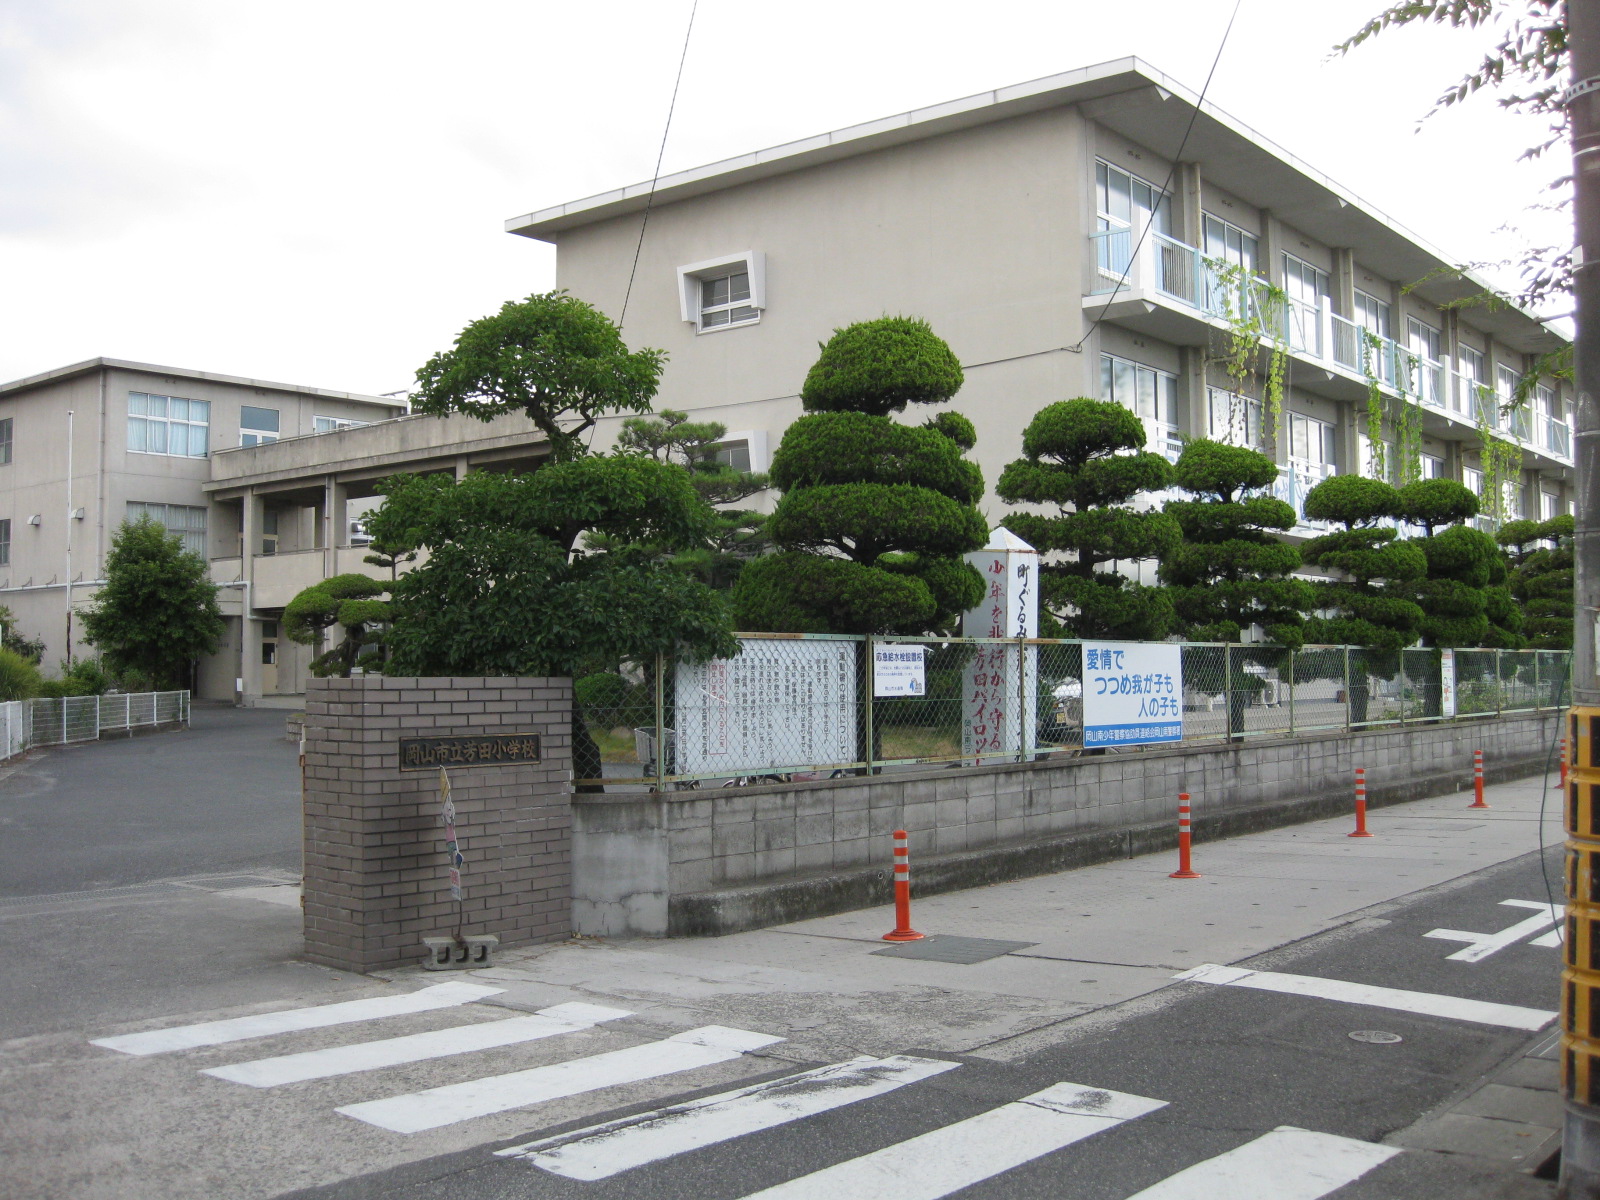 Primary school. 586m to Okayama Yoshida elementary school (elementary school)